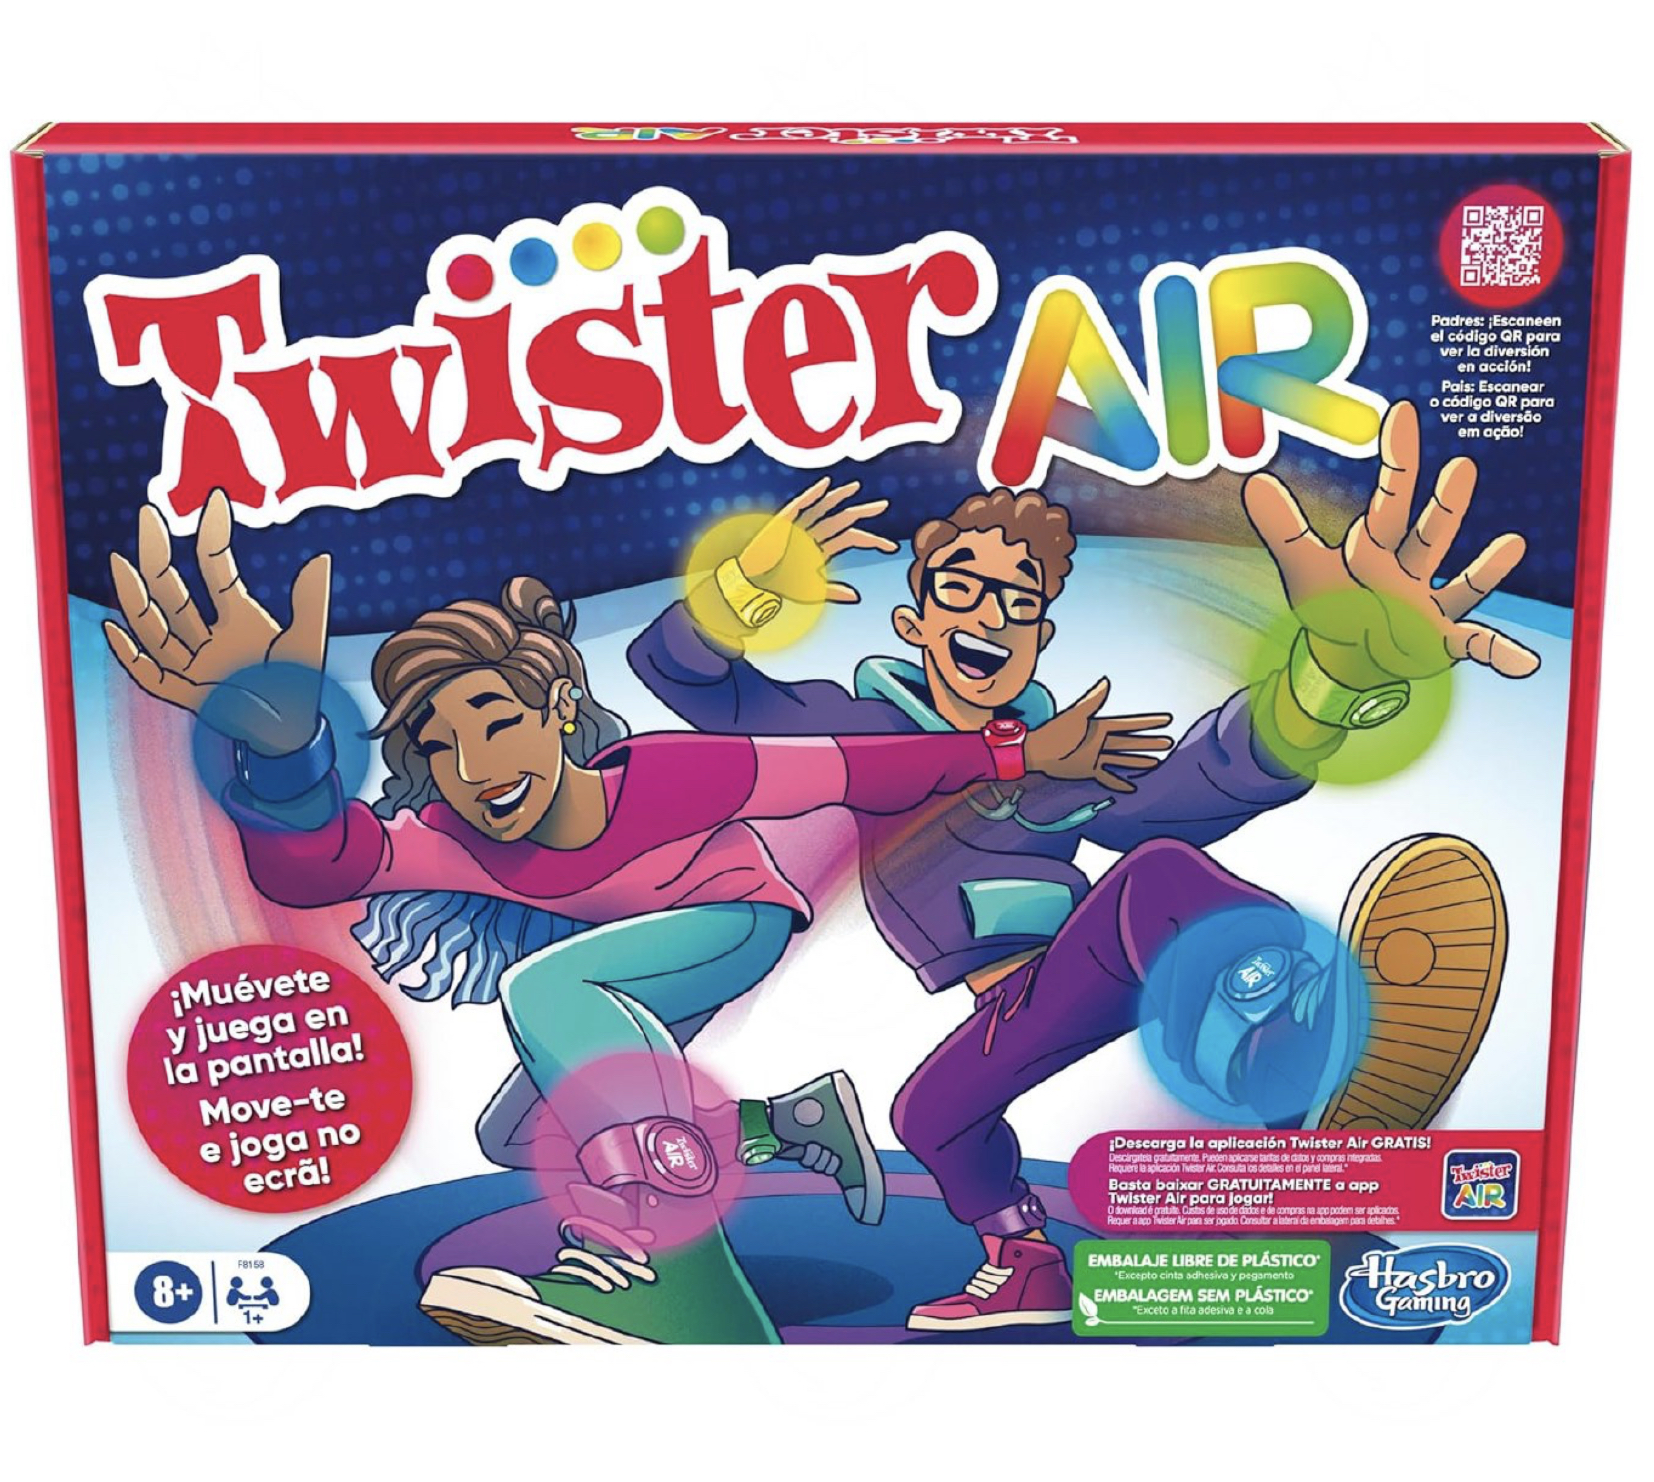 Twister Air Realidad aumentada